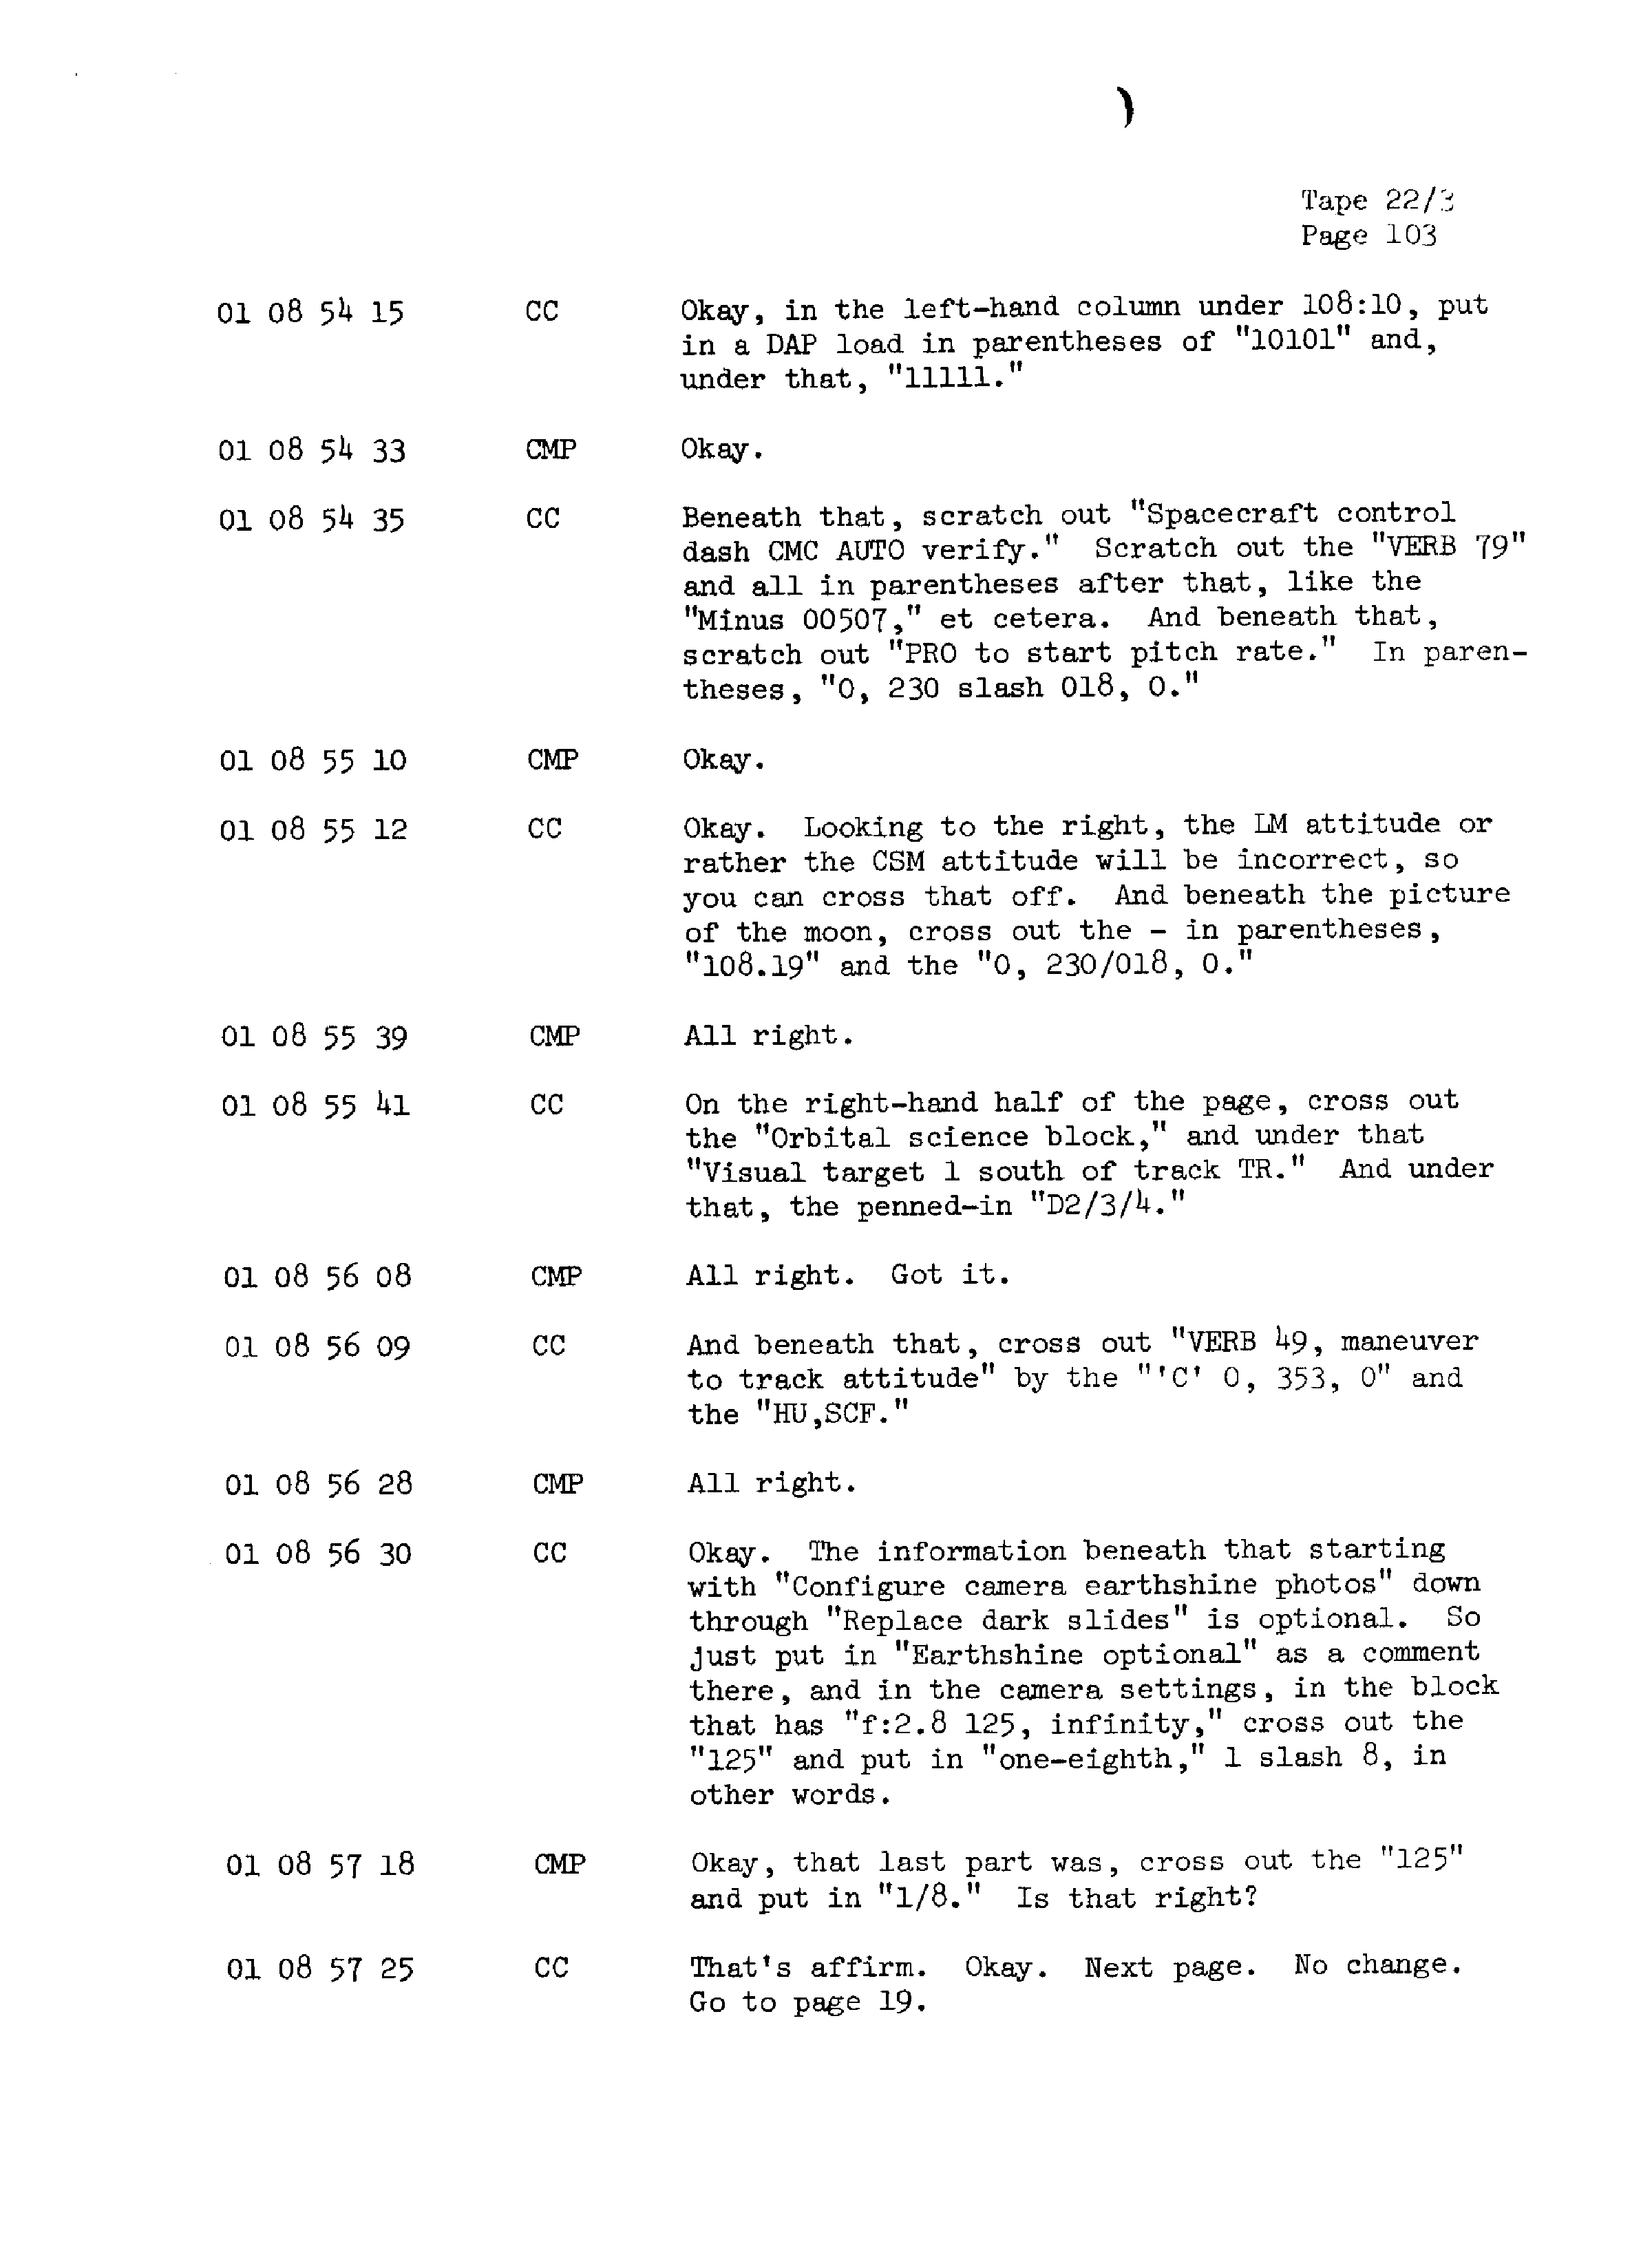 Page 110 of Apollo 13’s original transcript